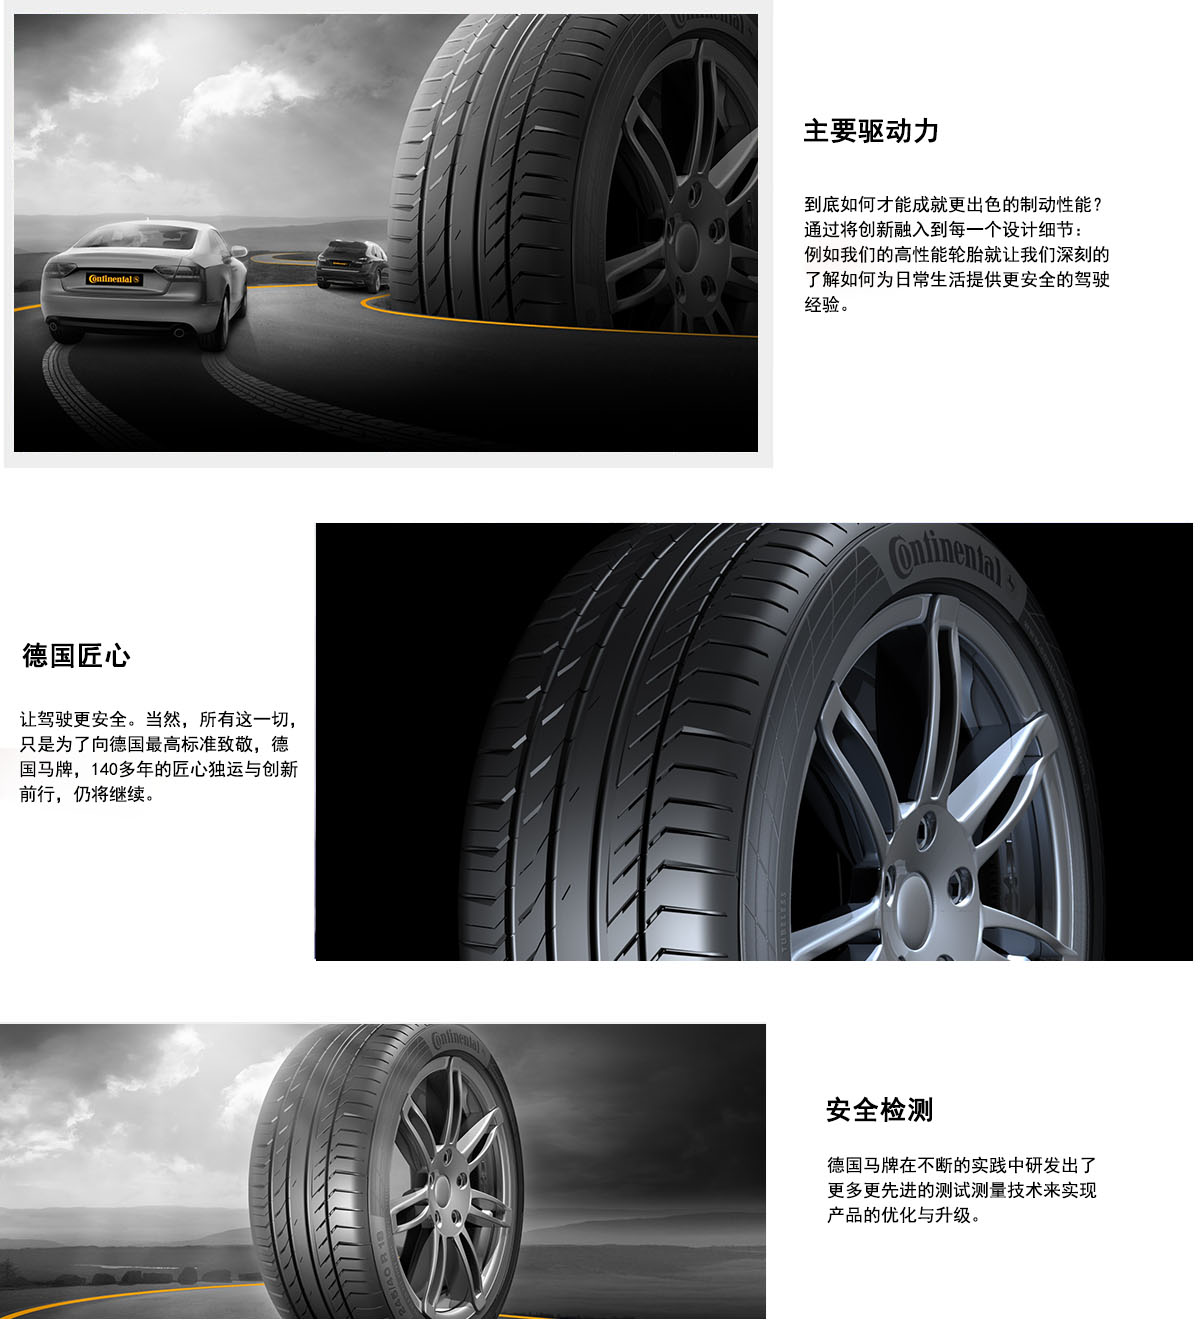 西安马牌轮胎讲述马牌轮胎的发展史